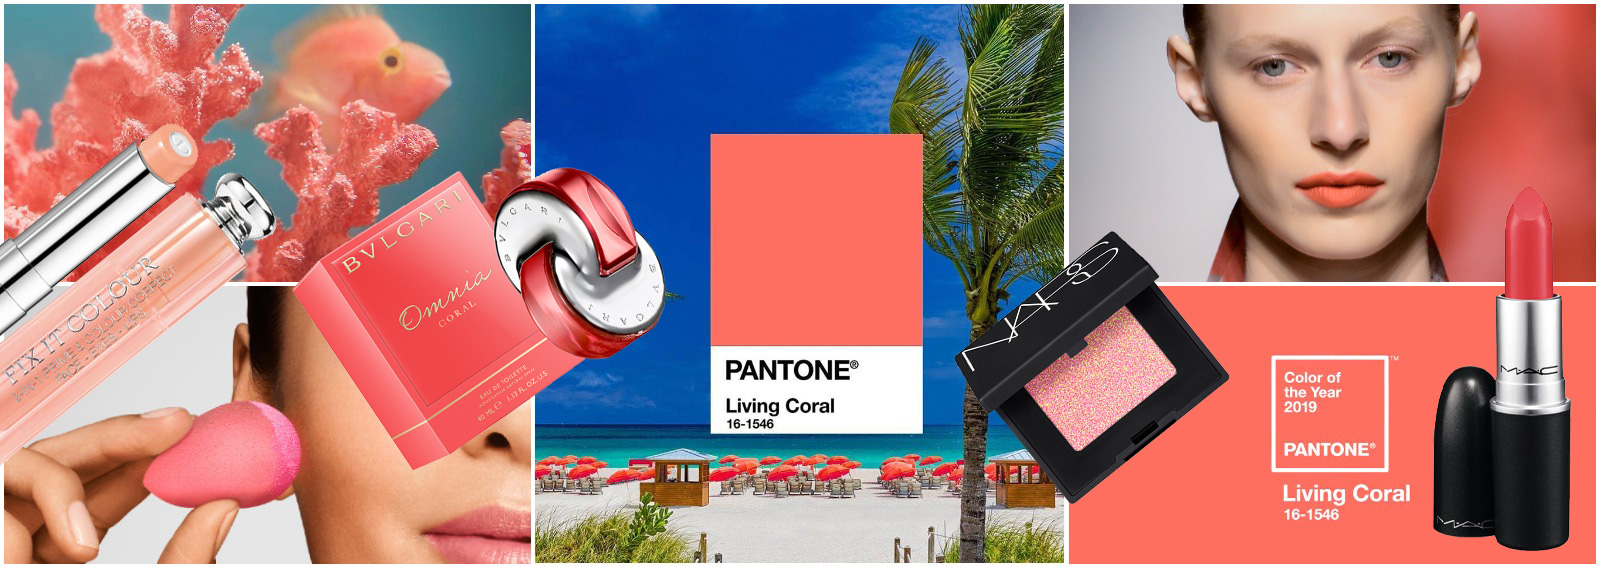 pantone-living-coral-colore-2019-prodotti-make-up-cover-desktop